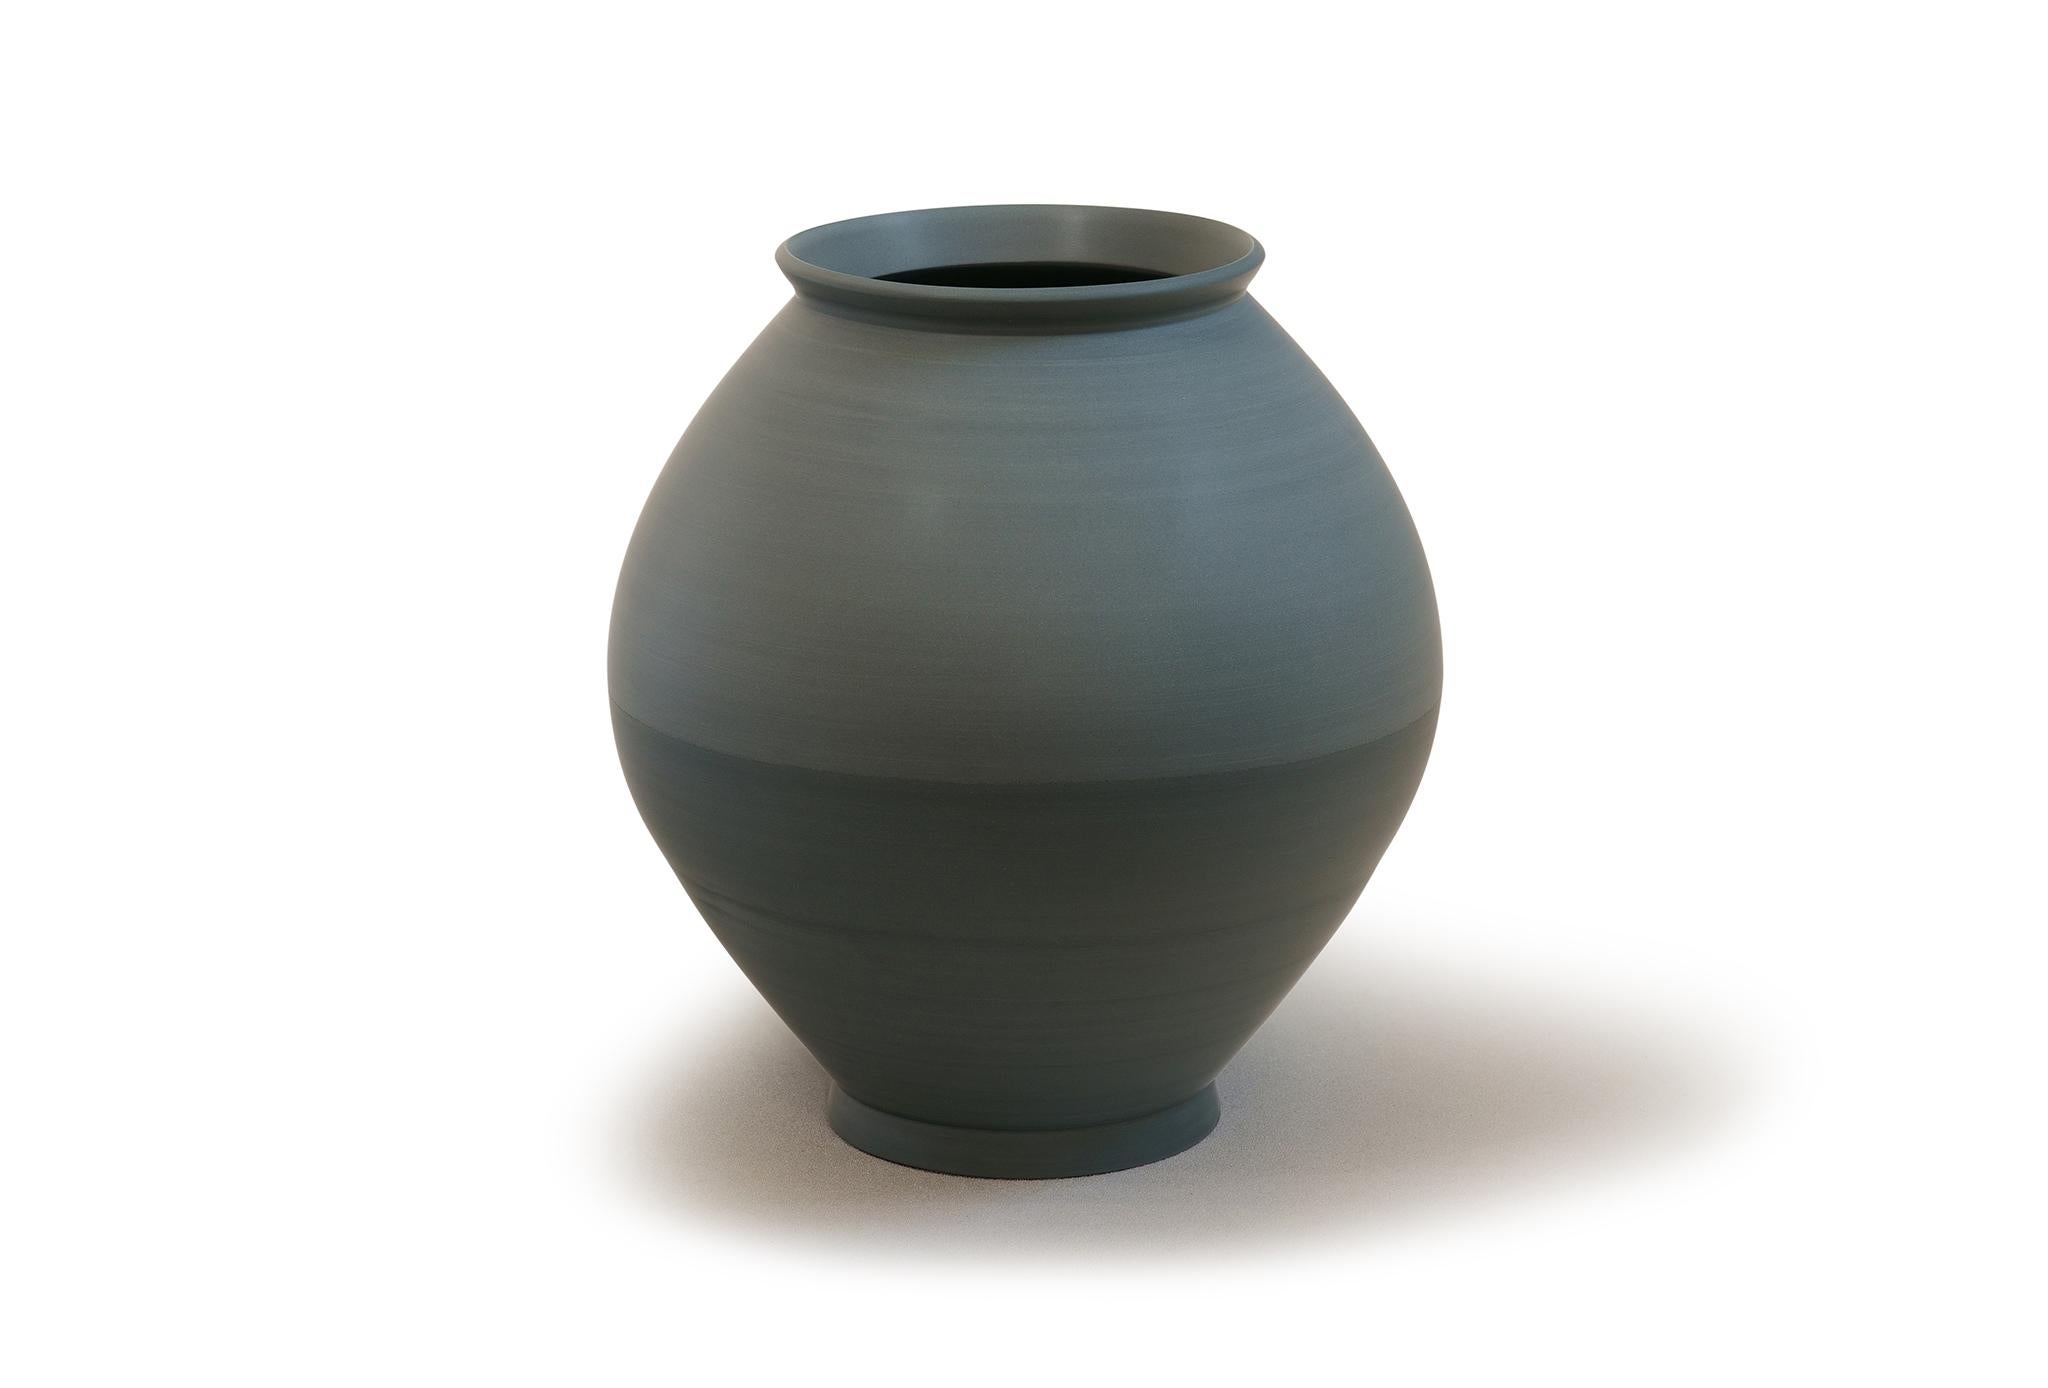 Halbe Vase von Jung Hong
Einzigartiges Stück
Abmessungen: B 32 x T 32 x H 34 cm
MATERIALIEN: Porzellan

Ich verwende die Technik des 'sang-gam' (=Einlegearbeit) mit meinem speziellen Werkzeug, das ich selbst hergestellt habe, und kreiere zarte und